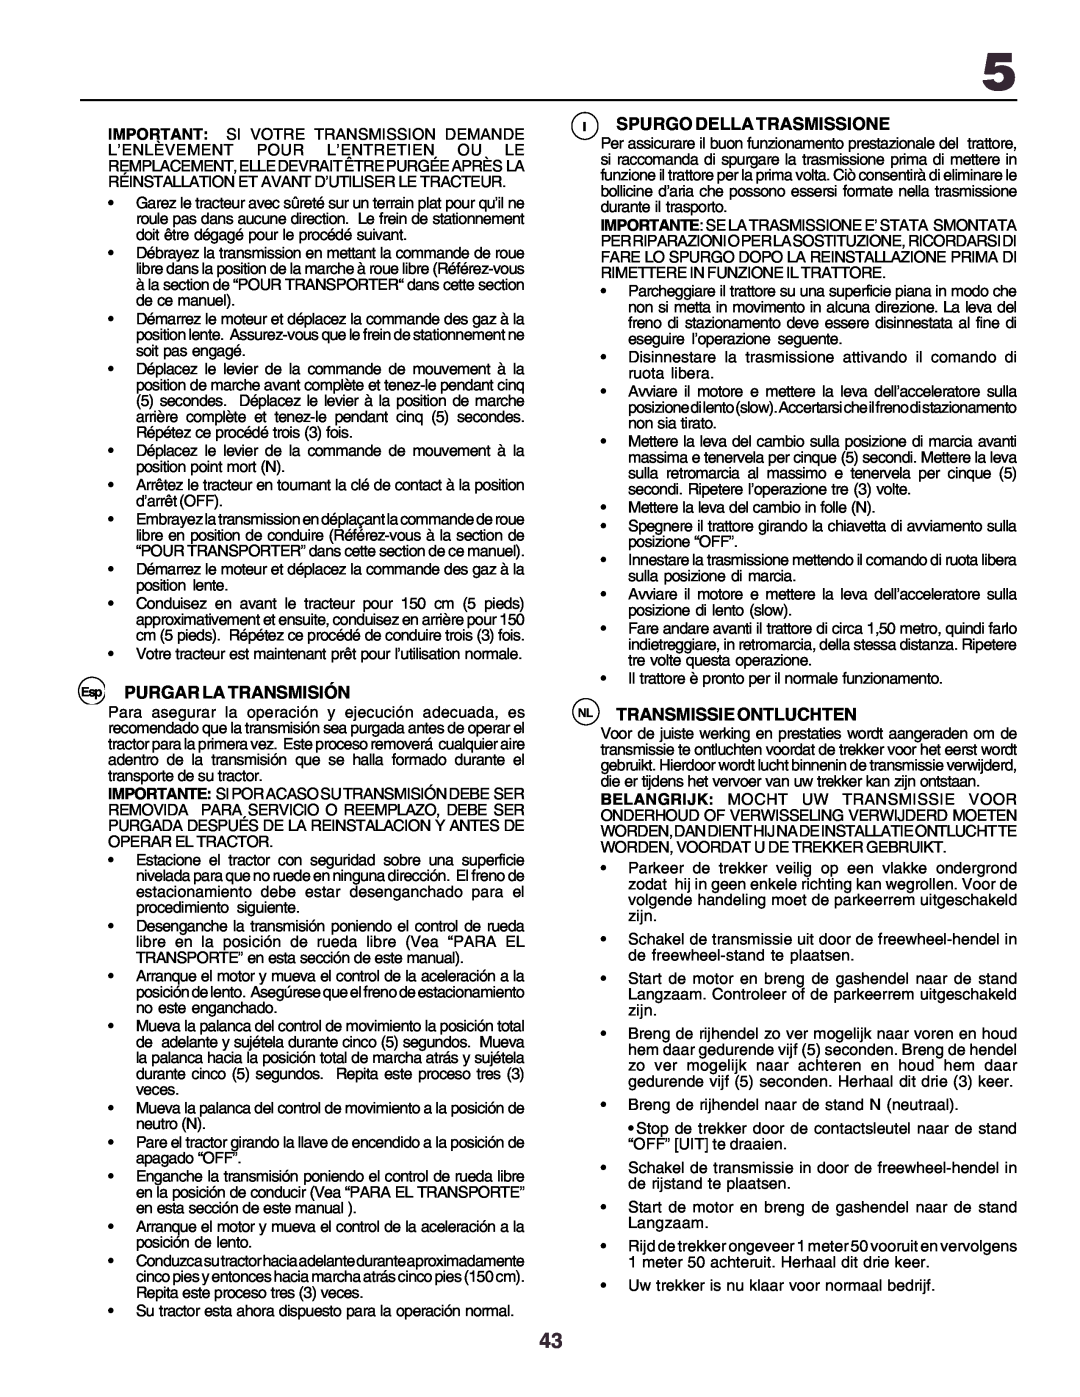 Husqvarna YTH170 instruction manual Esp PURGAR LA TRANSMISIÓN, Ispurgo Della Trasmissione, Nl Transmissie Ontluchten 